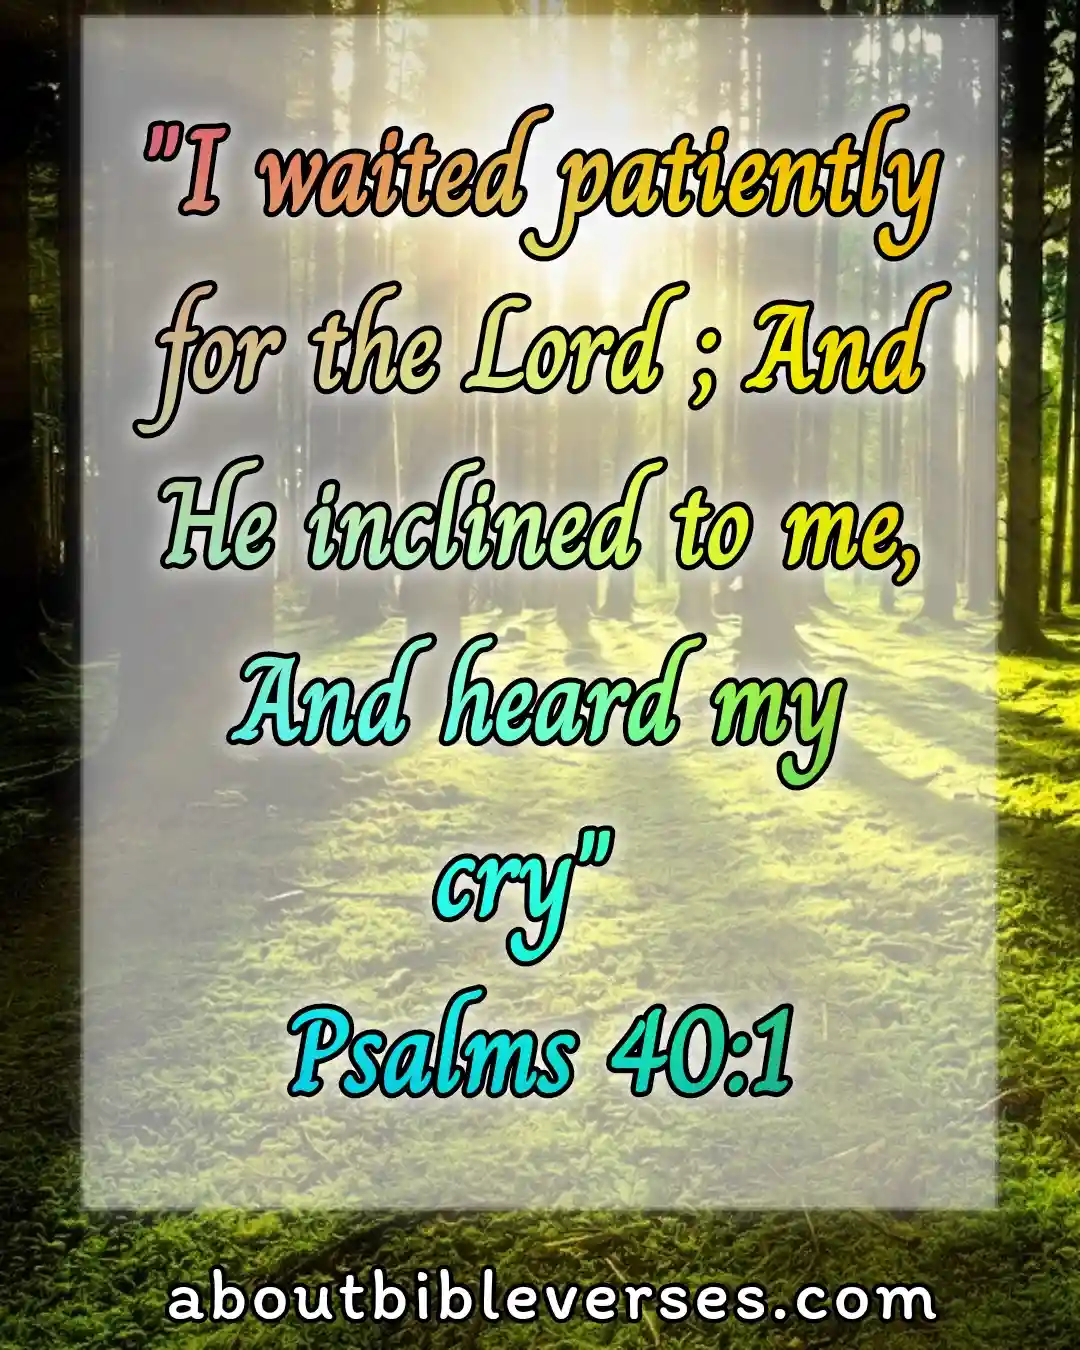 19 versículos de la Biblia que explican cómo tener paciencia en un momento difícil